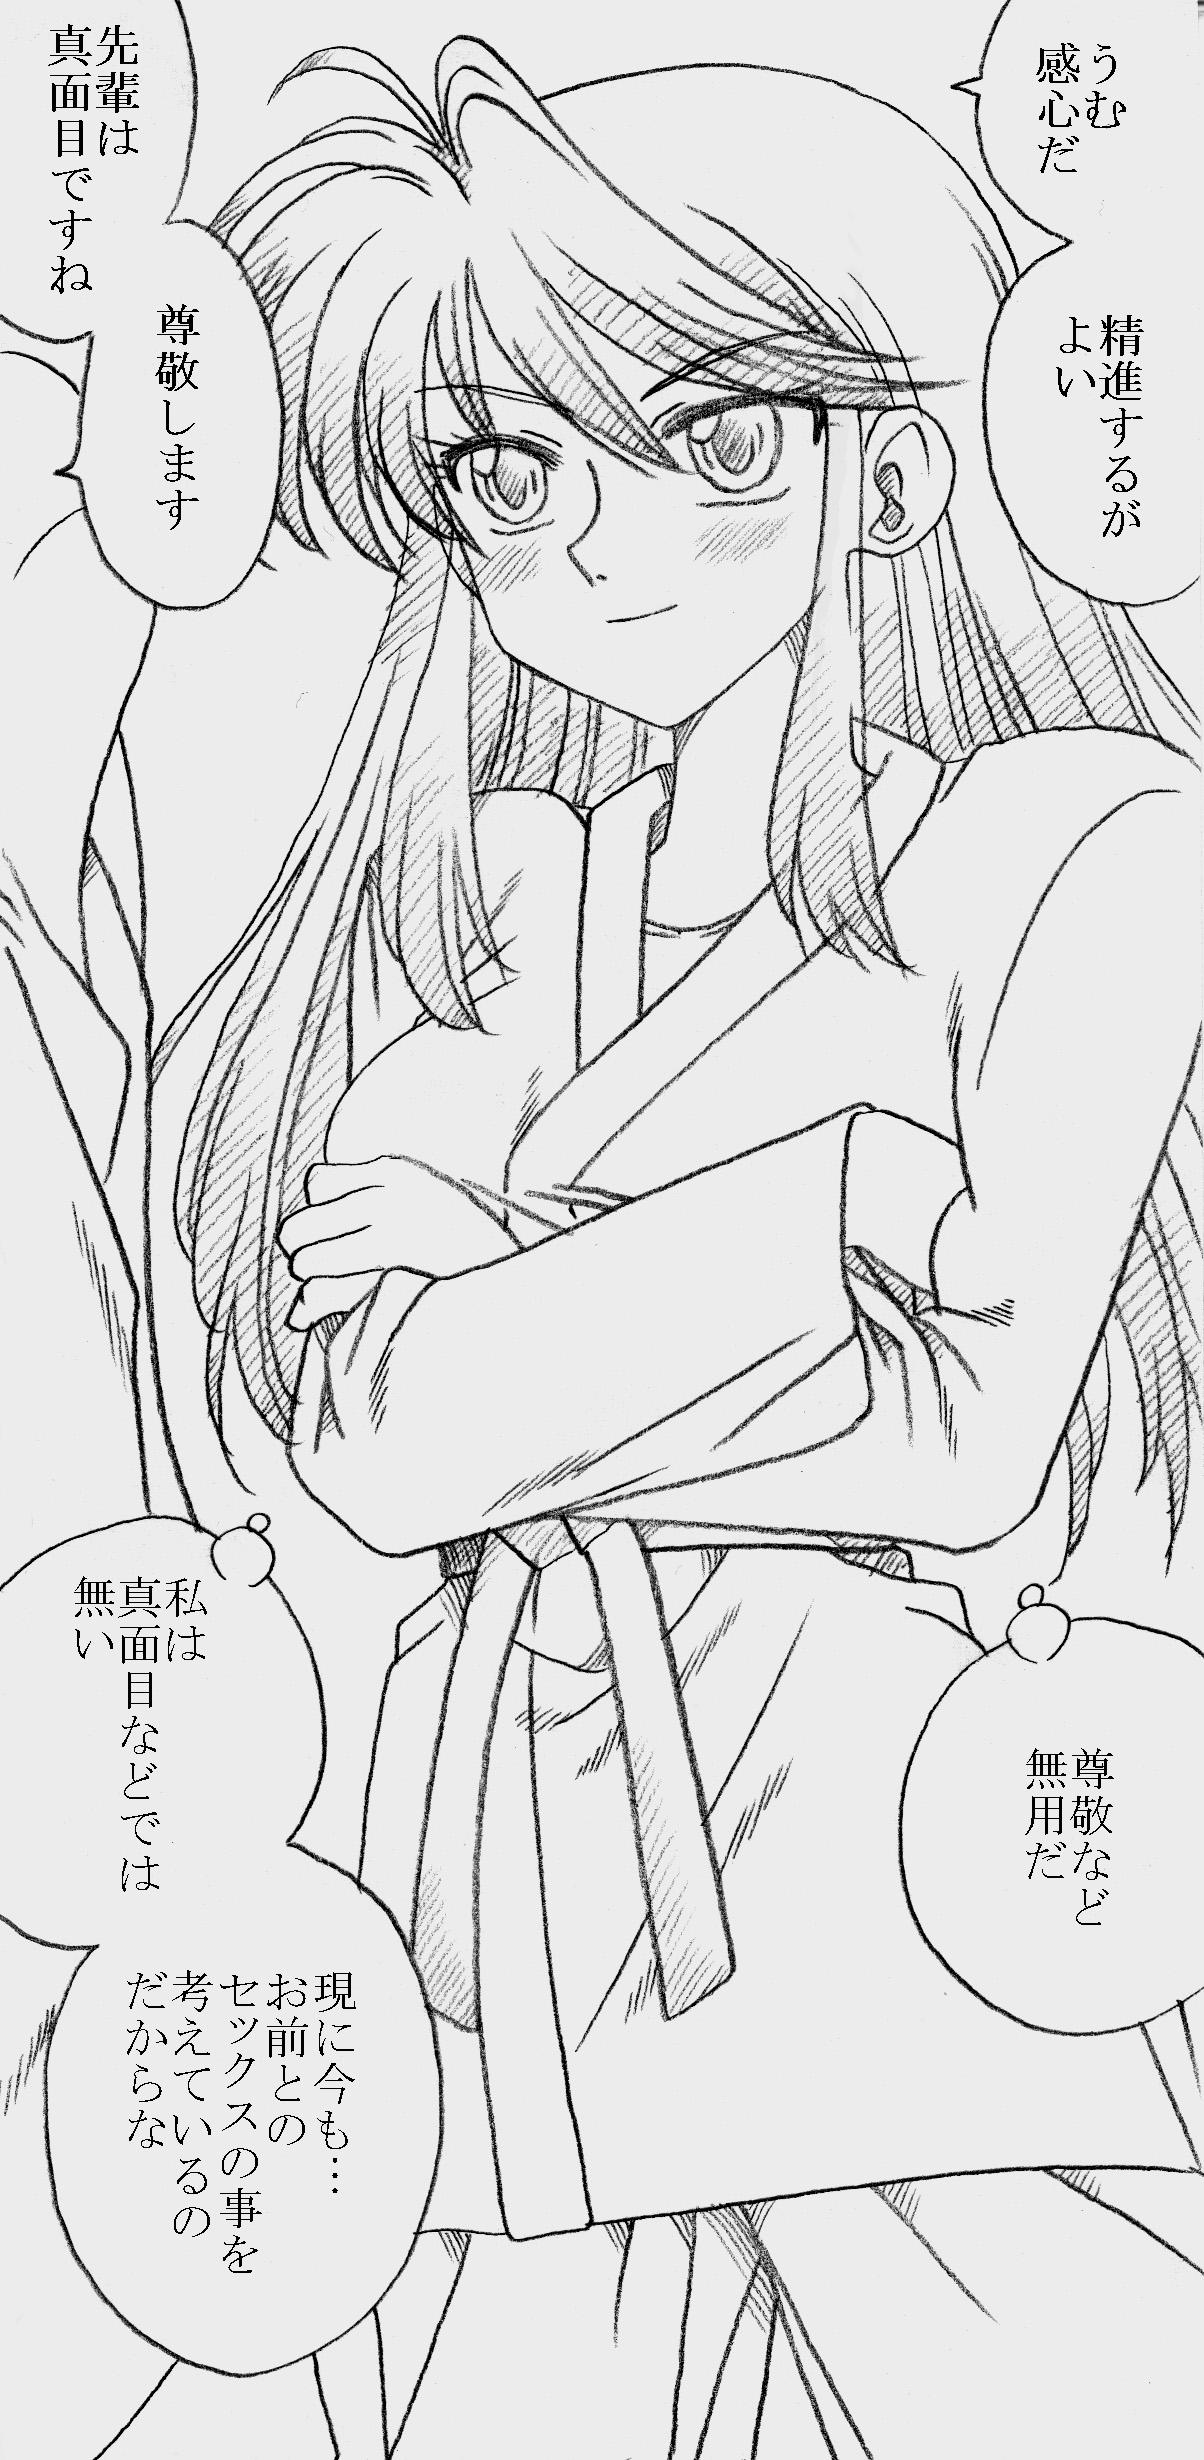 Solo Female Fukazawasanto Haradasan Kusuridukeni sarete Ryoujyokusareru - Original Gay Blowjob - Picture 1